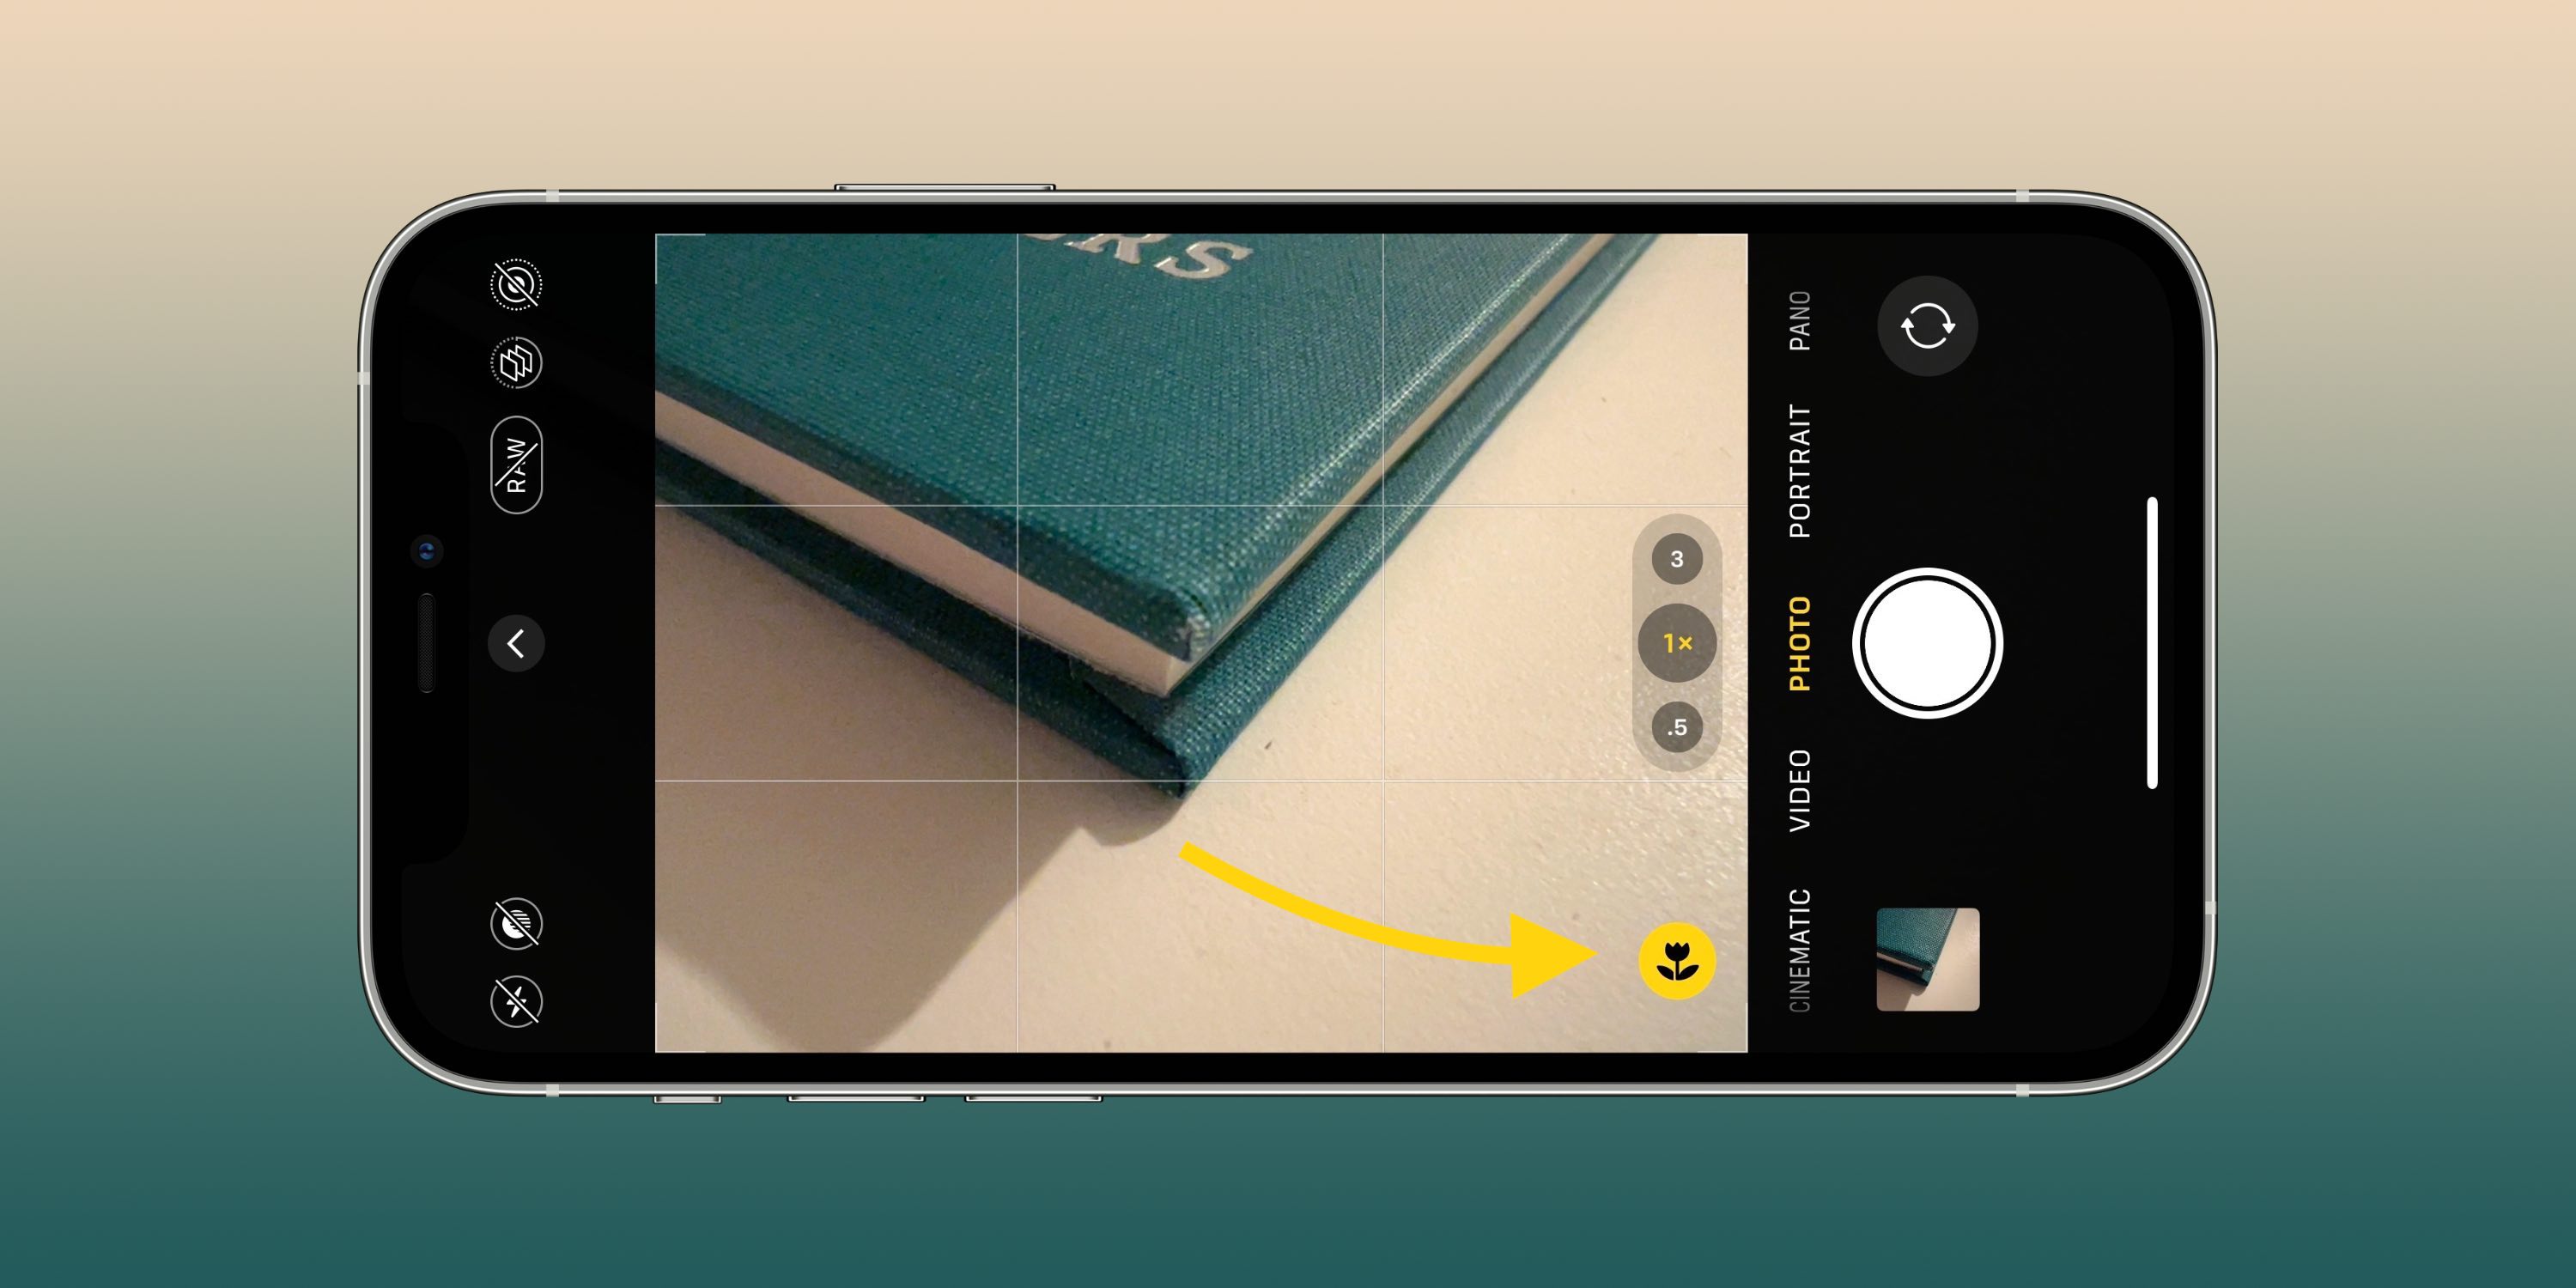 Эти настройки камеры помогут вам делать более качественные фото и видео на вашем iPhone.